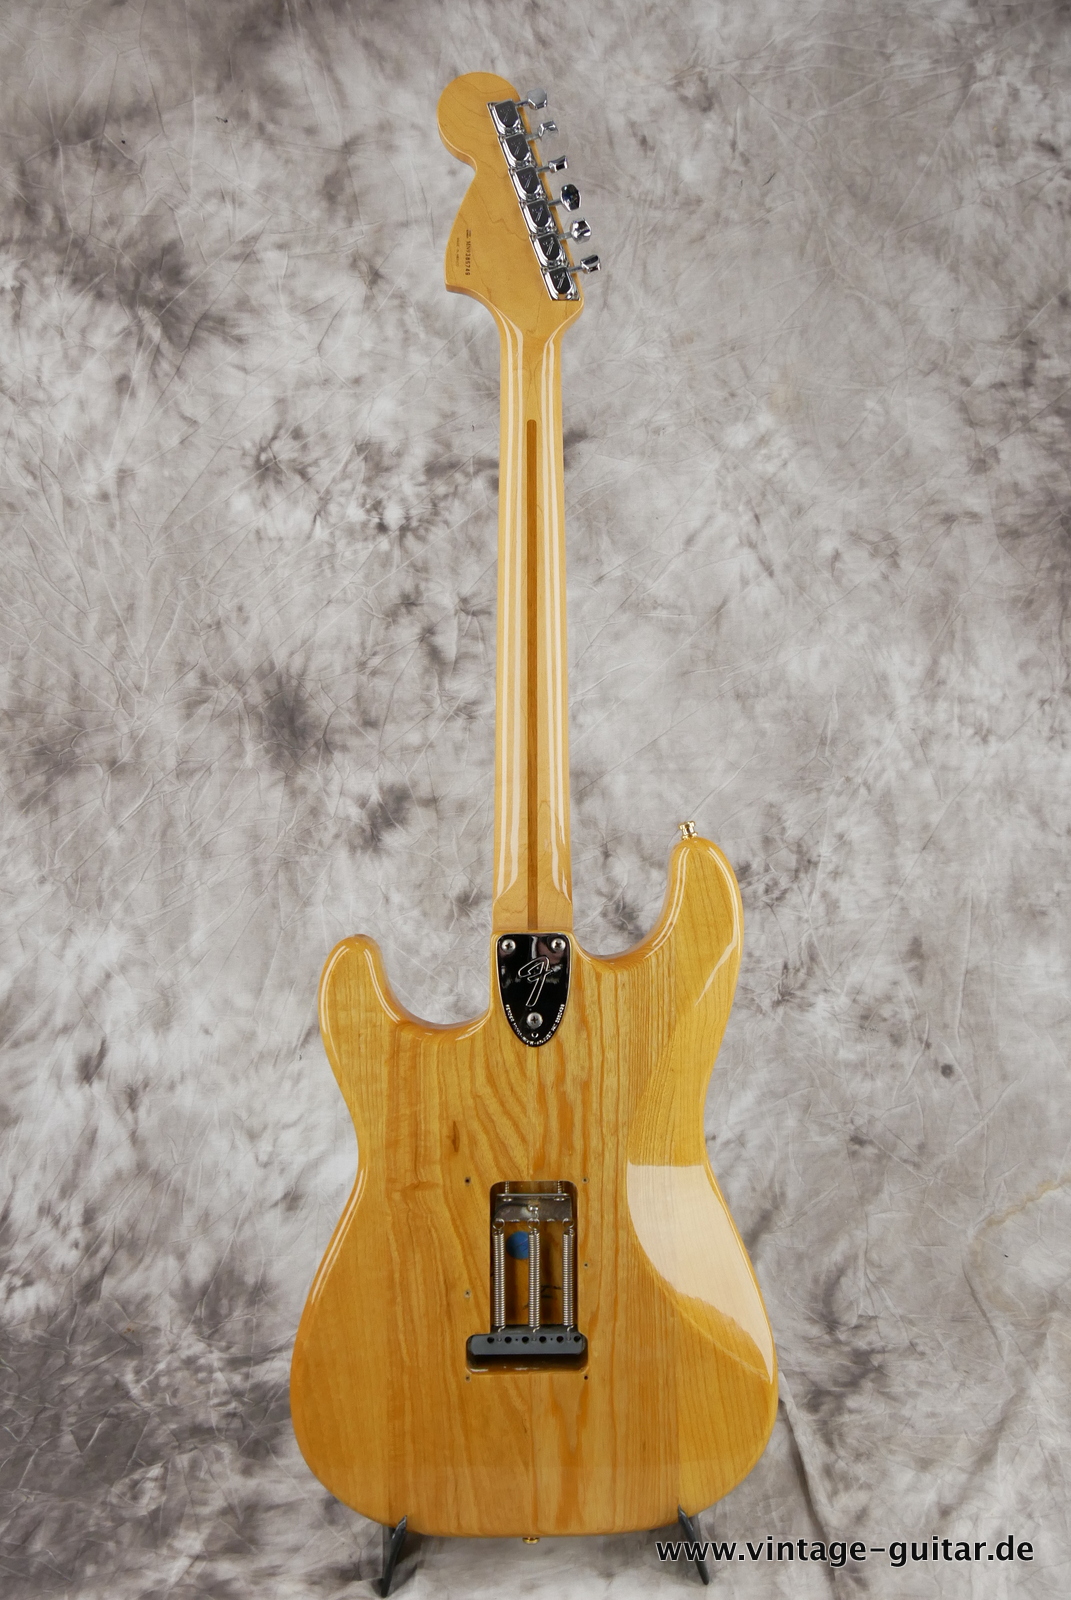 Fender_Stratocaster_70s_reissue_maple_neck_1999_Mexico-002.JPG